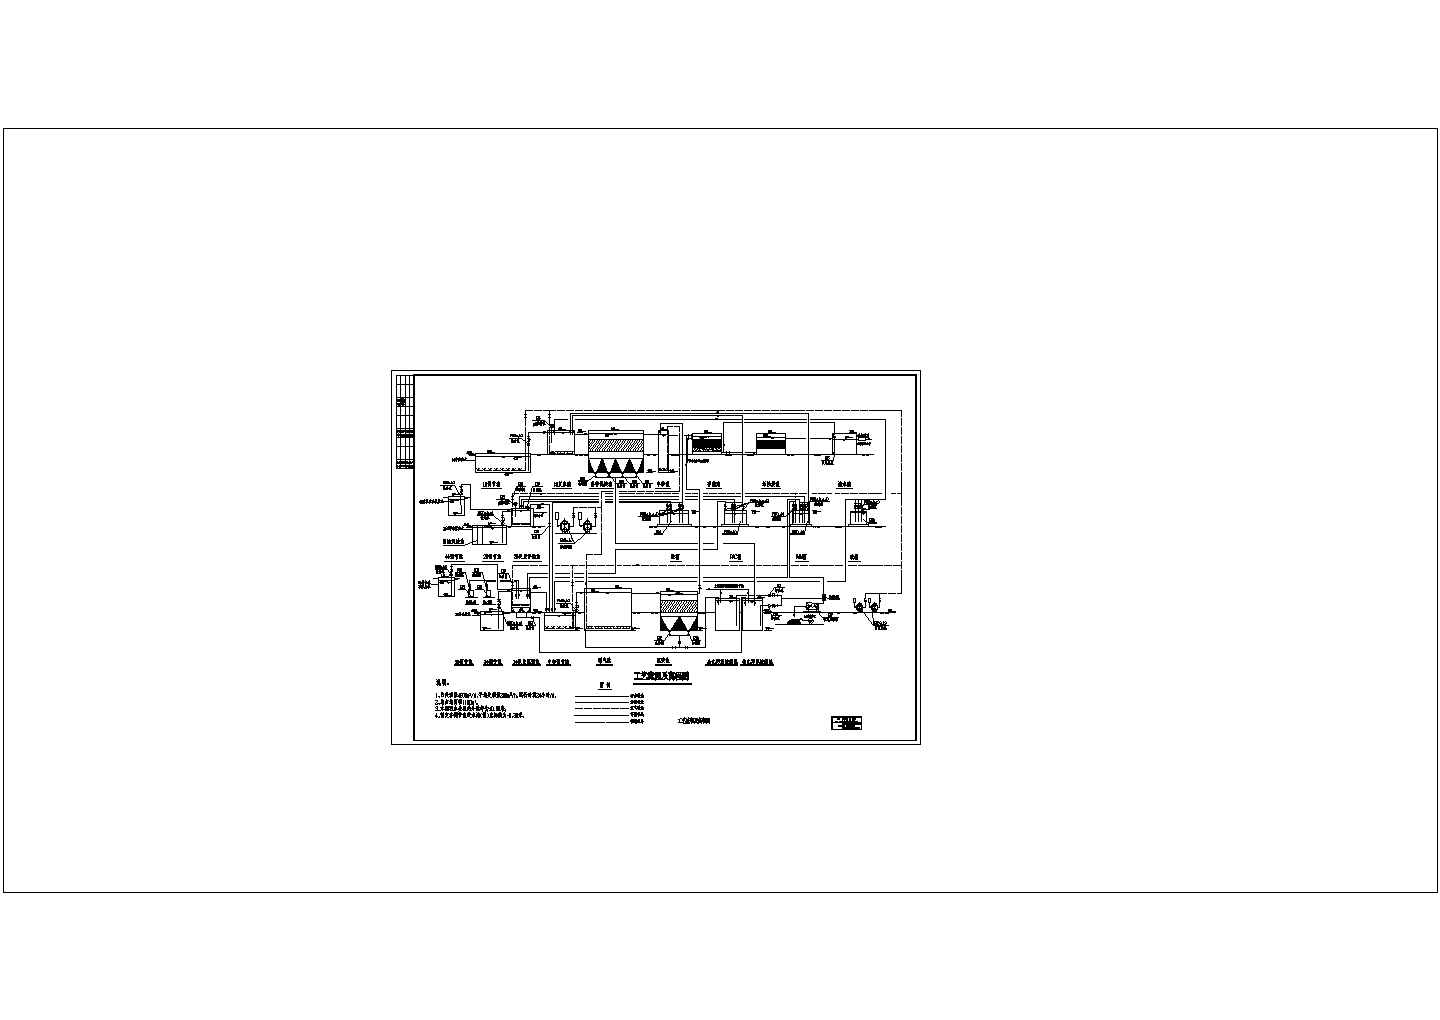 某印刷电路板厂污水水解酸化处理流程图非常标准CAD图纸设计